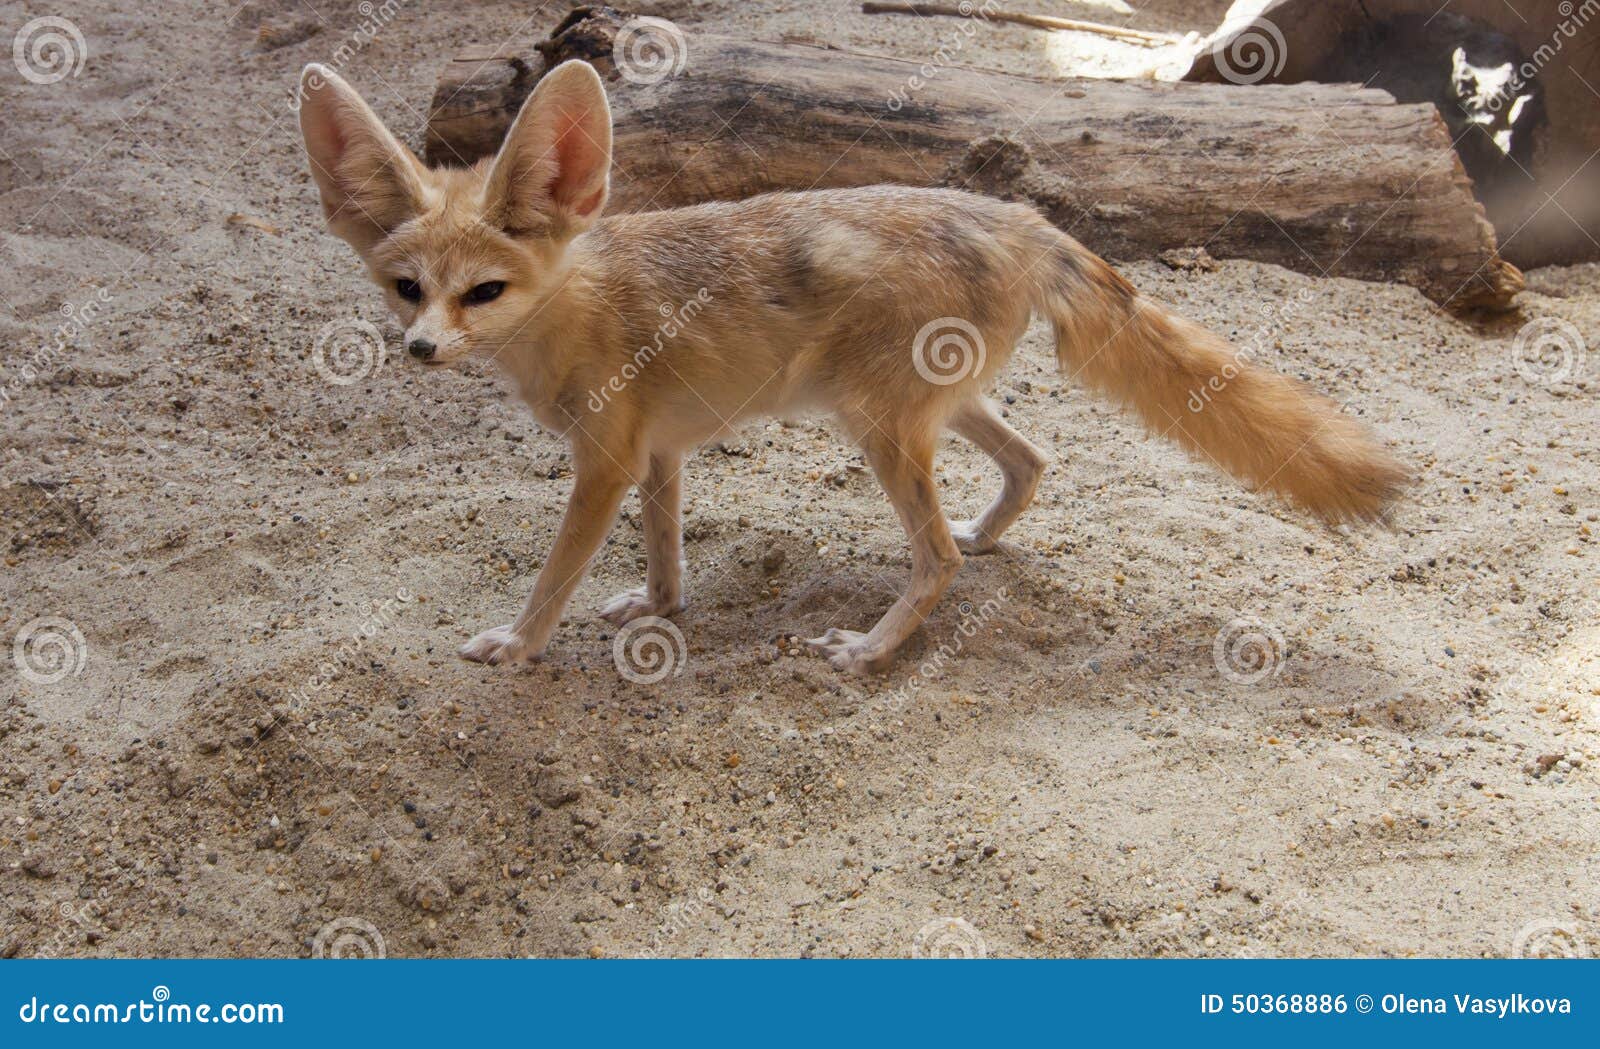 cape fox on the desert